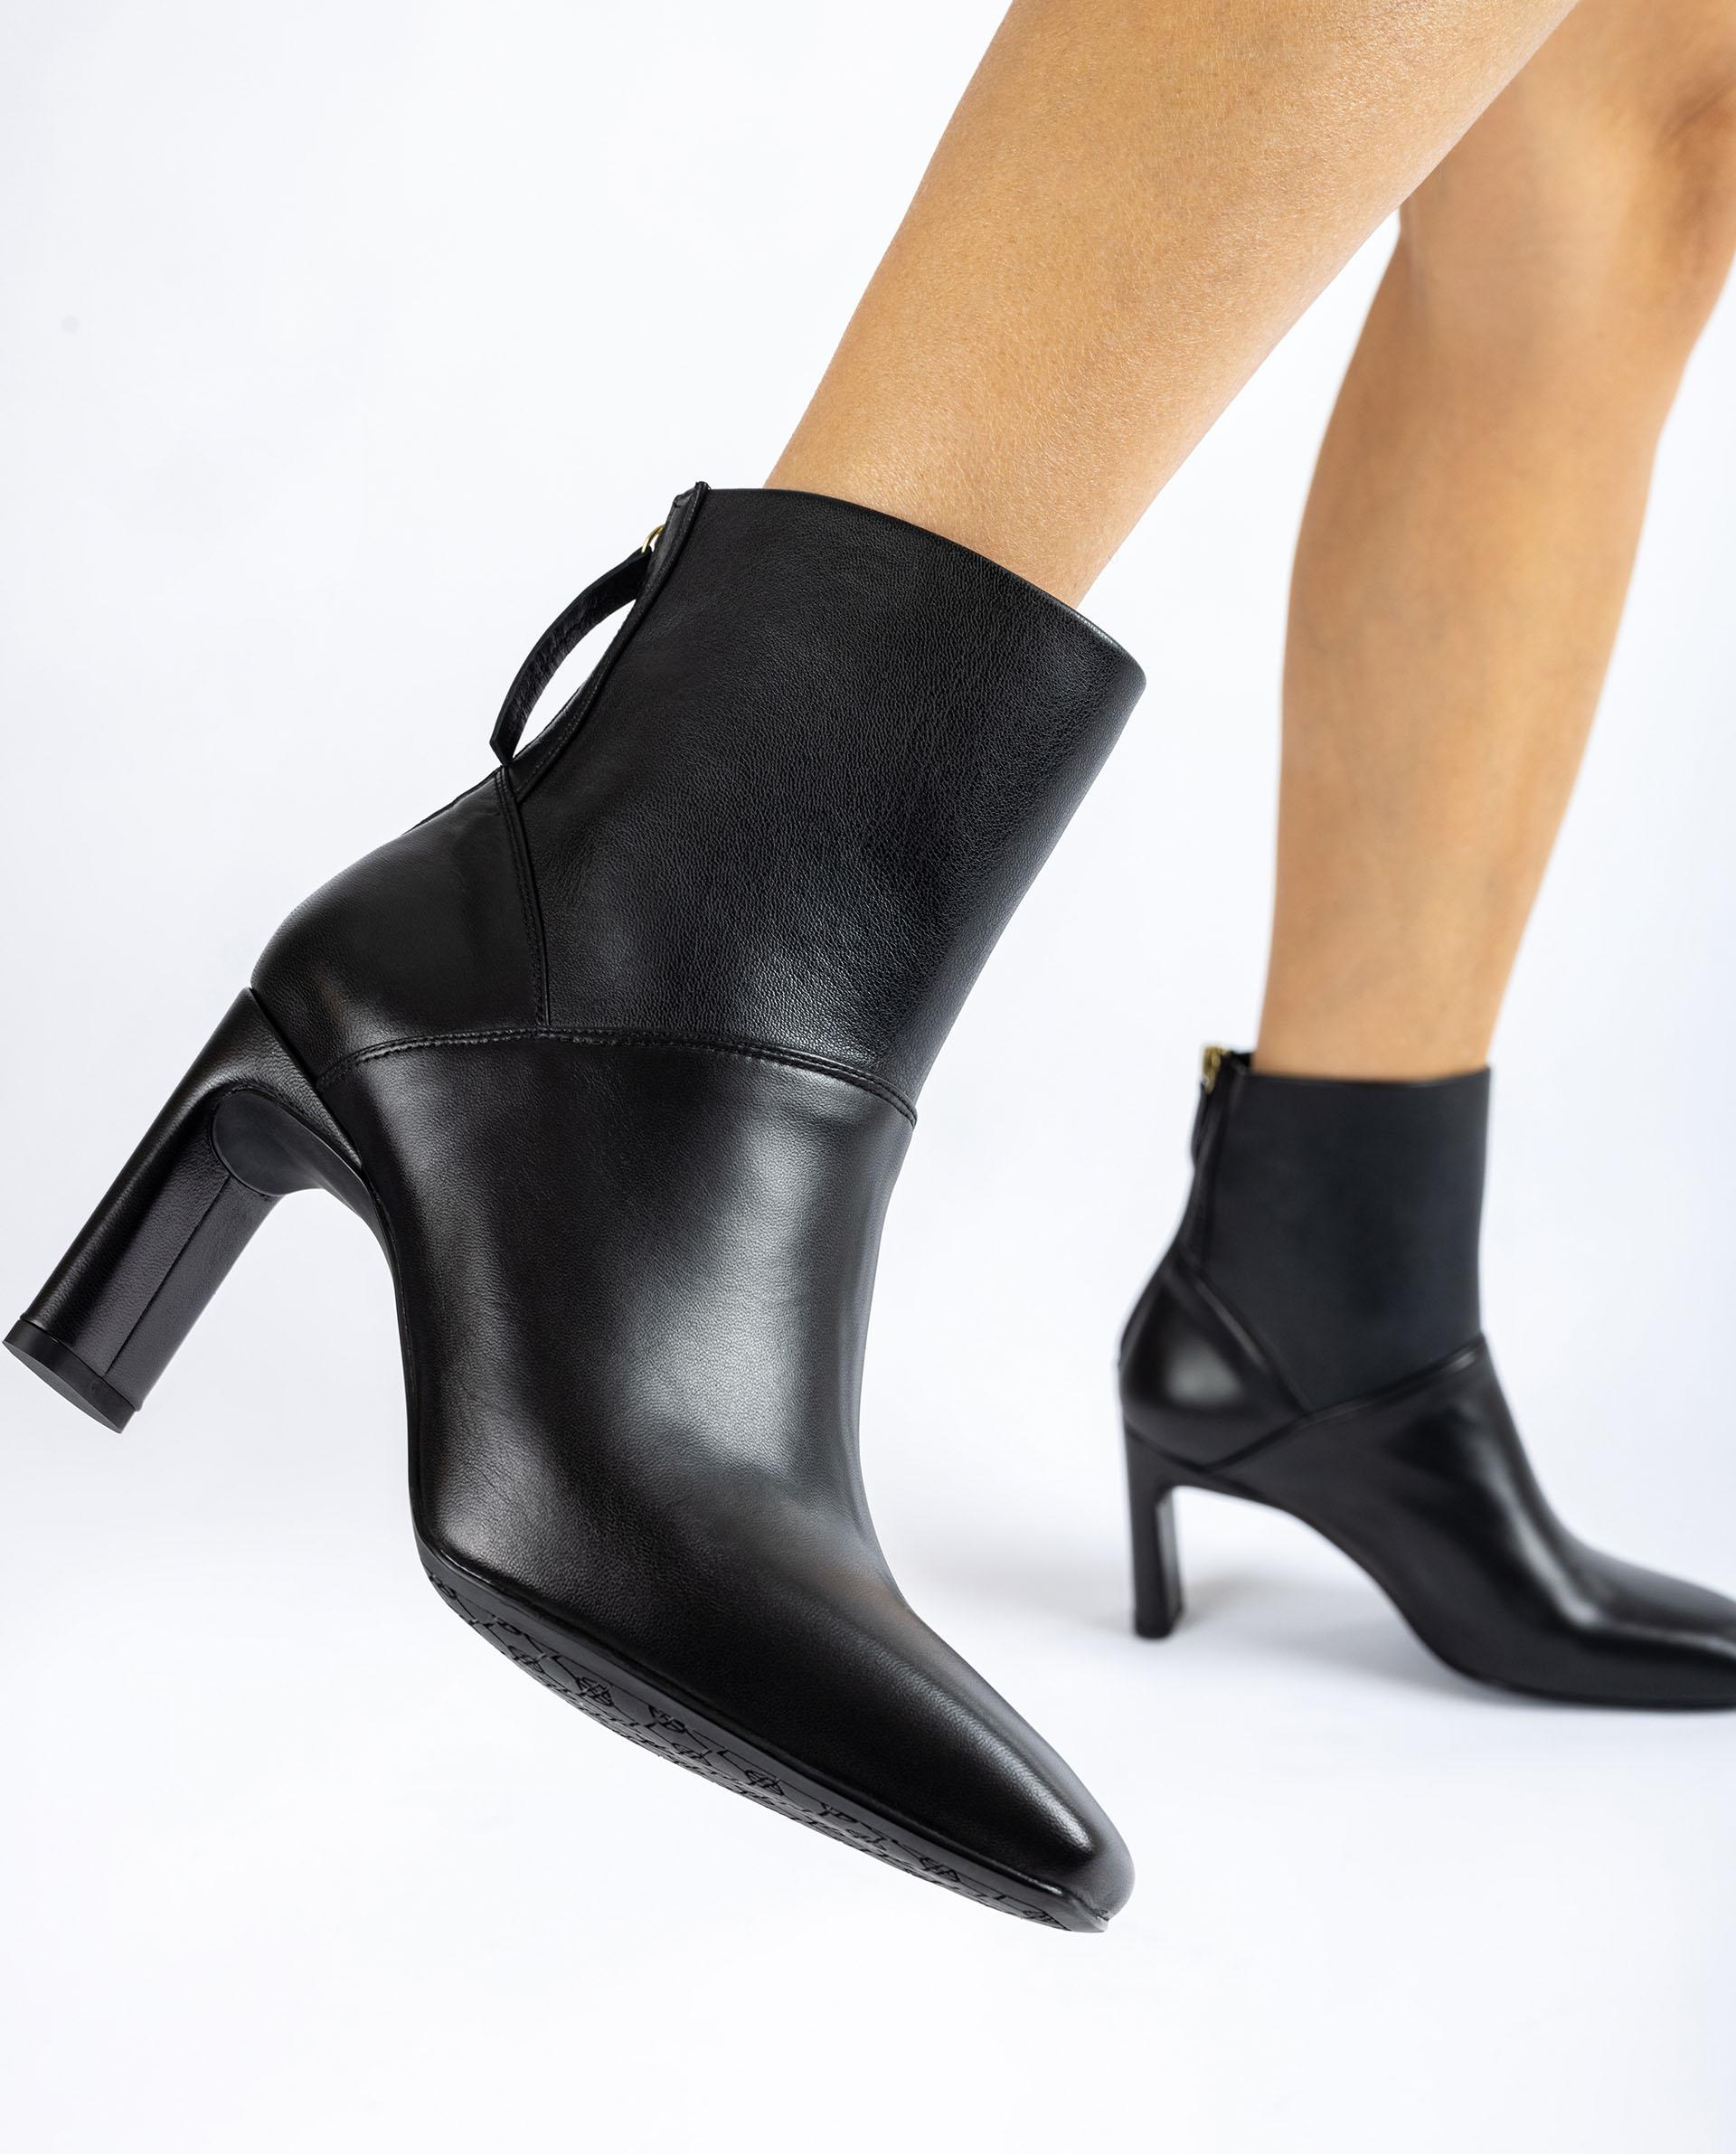 Unisa Ankle boots WOREN_VU_STN black